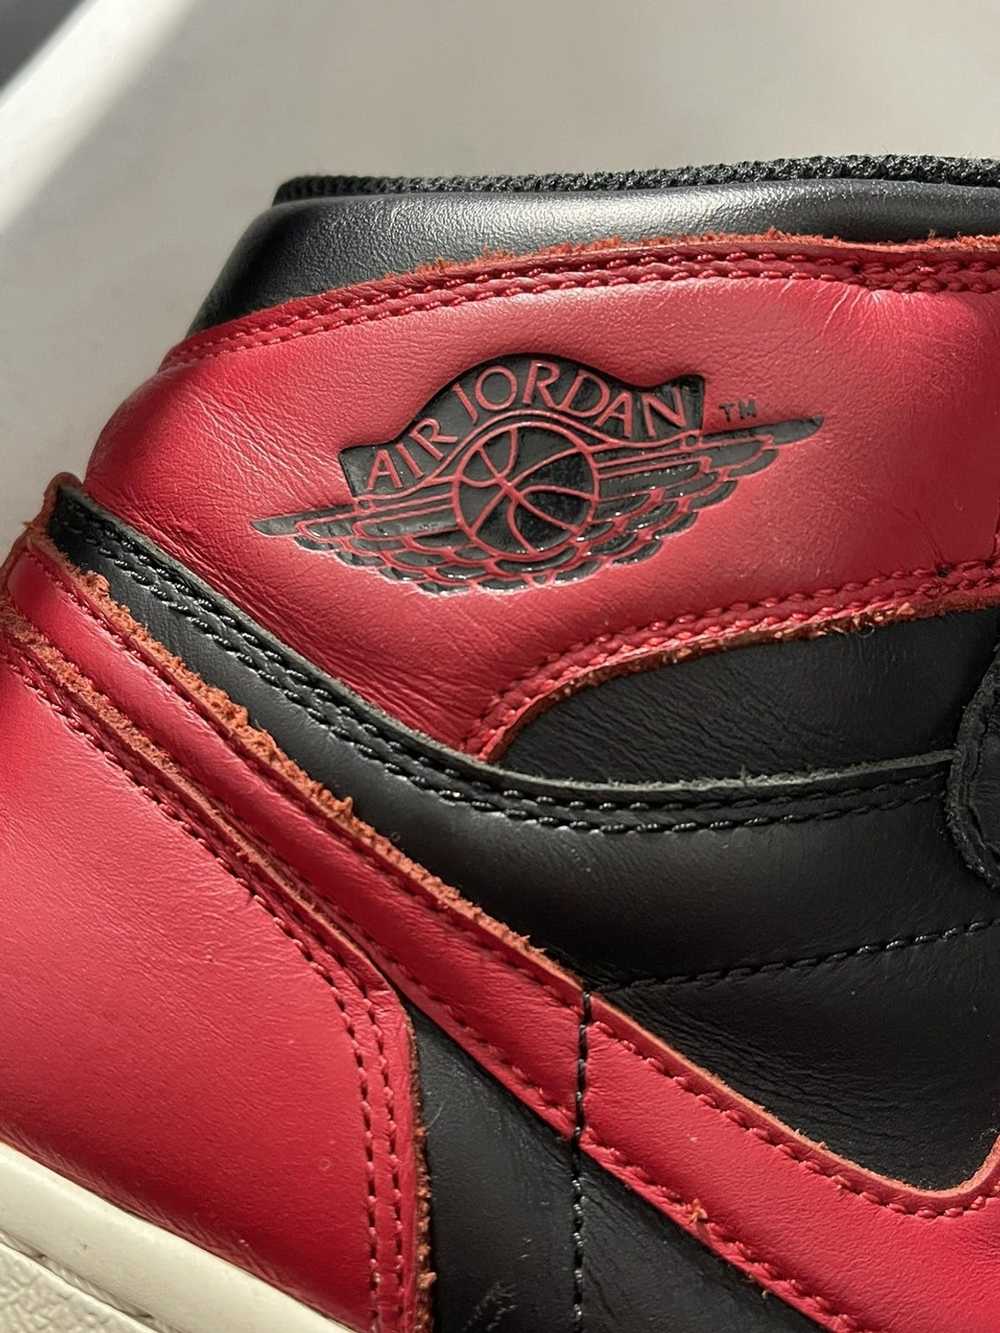 Jordan Brand × Nike Air Jordan 1 BRED (2013) - image 8